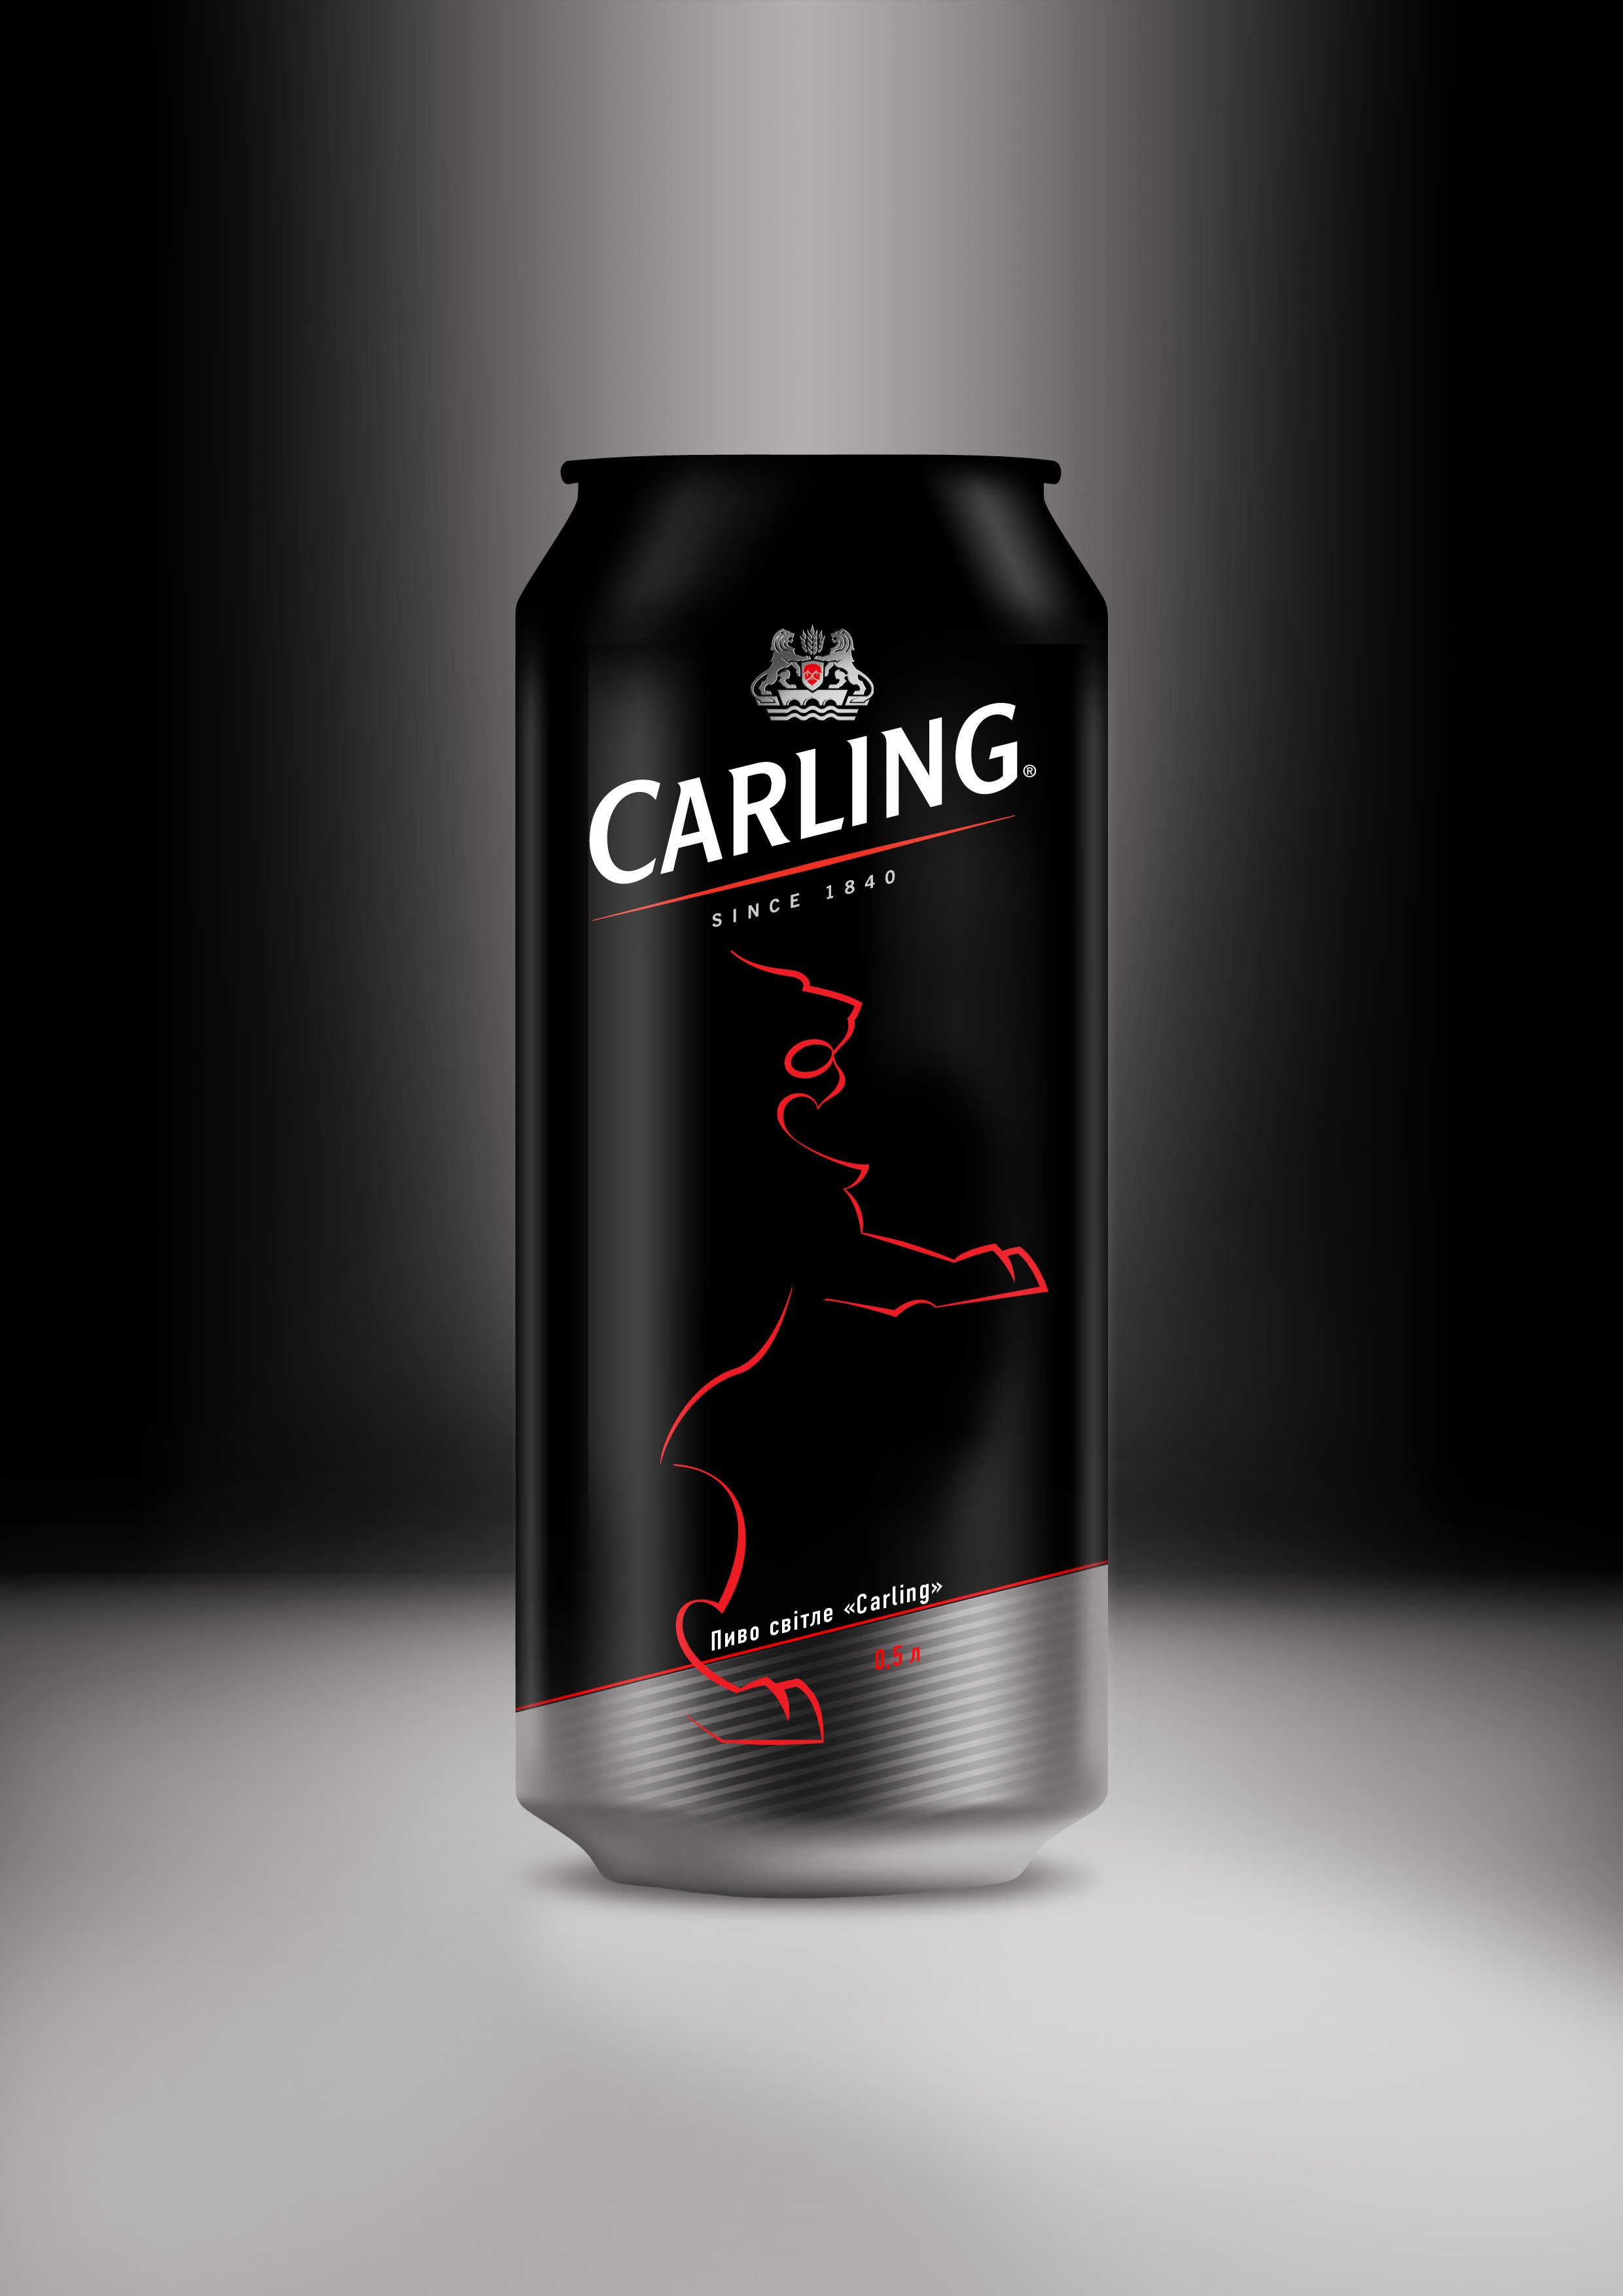 Разработка дизайна банки английского пива Carling